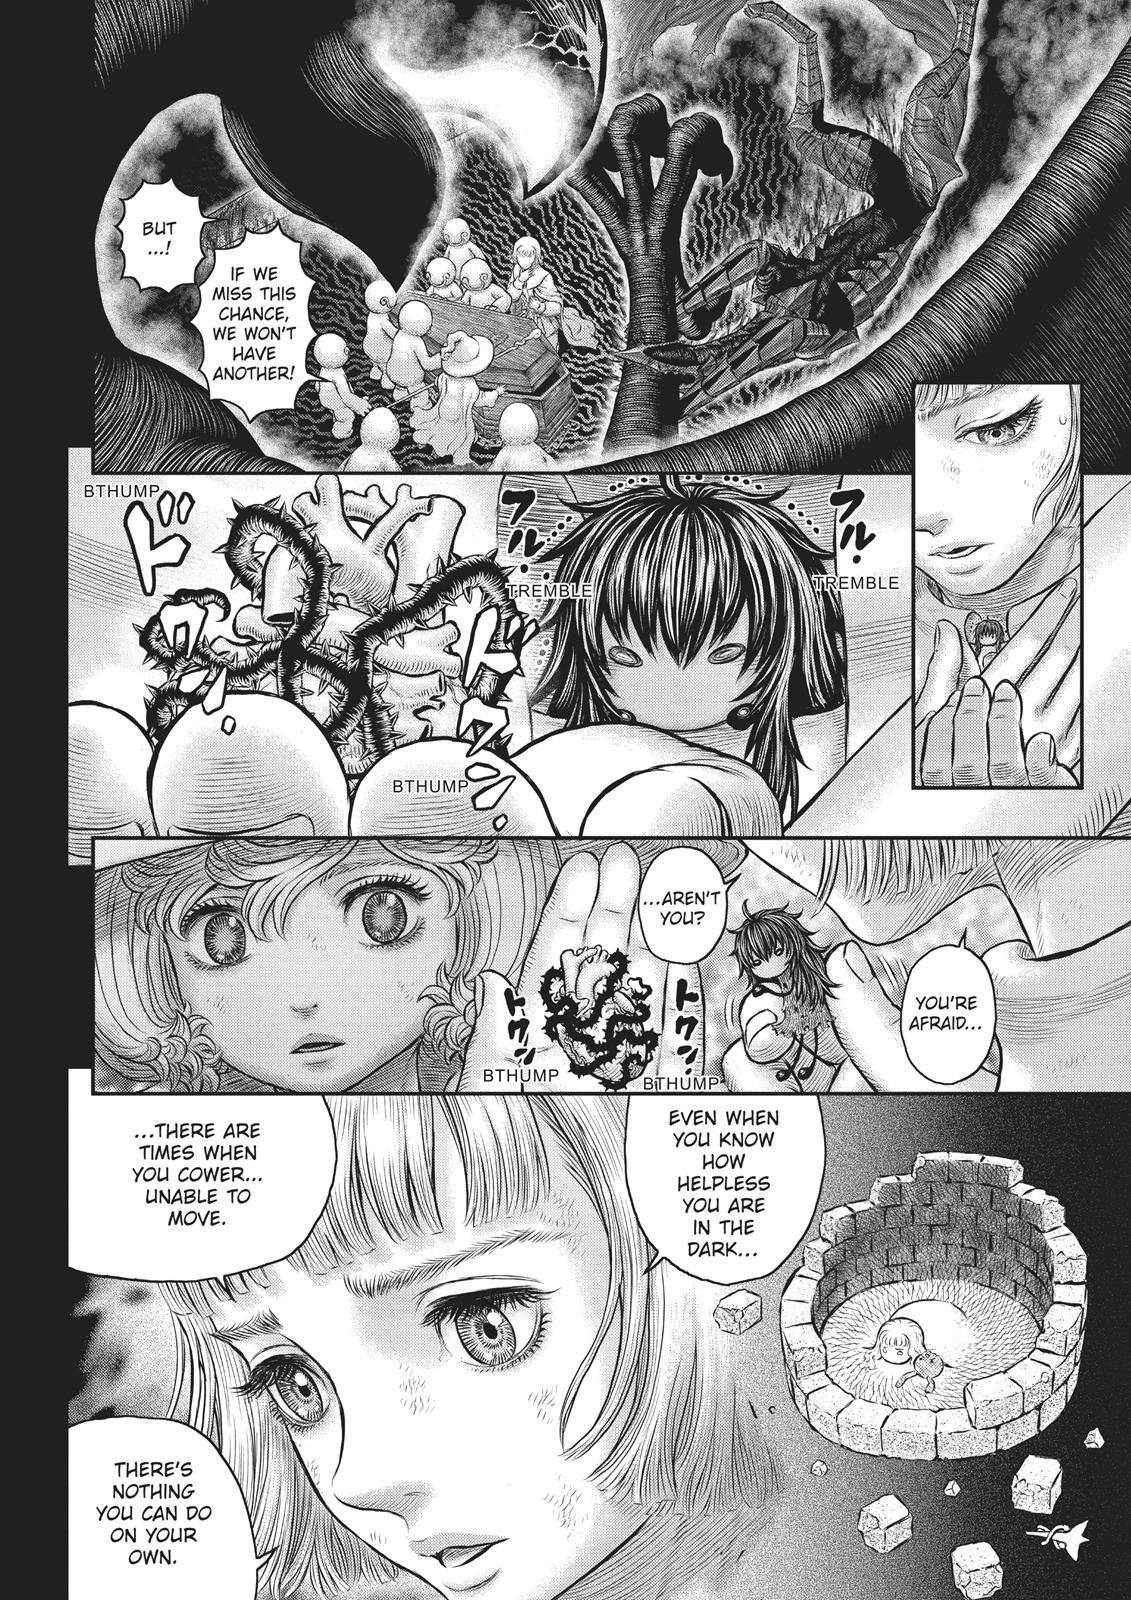 Berserk Manga Chapter 354 image 12